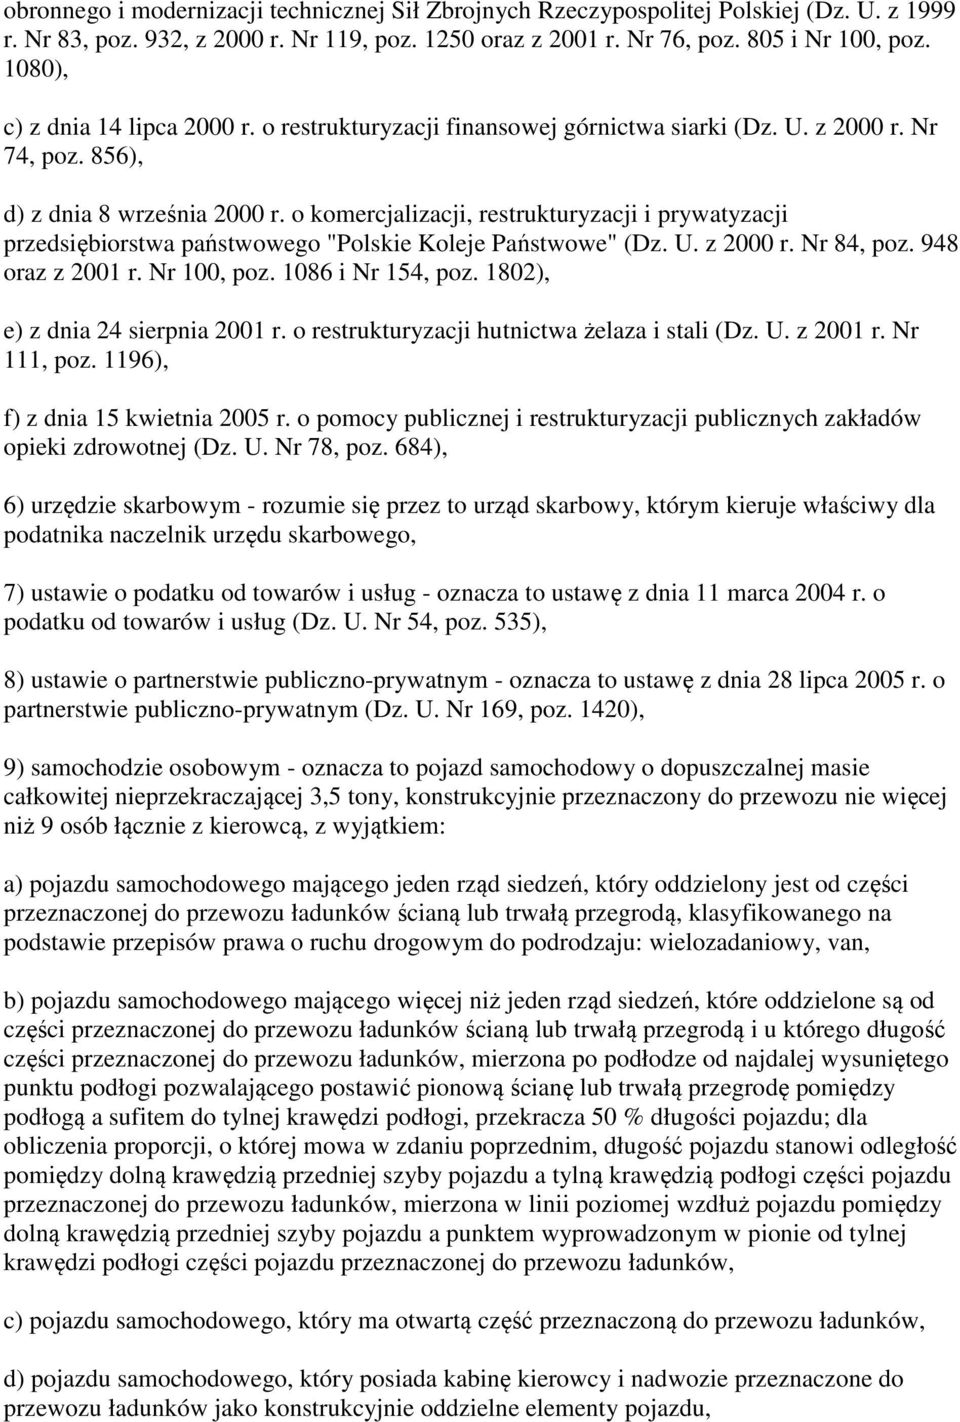 o komercjalizacji, restrukturyzacji i prywatyzacji przedsiębiorstwa państwowego "Polskie Koleje Państwowe" (Dz. U. z 2000 r. Nr 84, poz. 948 oraz z 2001 r. Nr 100, poz. 1086 i Nr 154, poz.